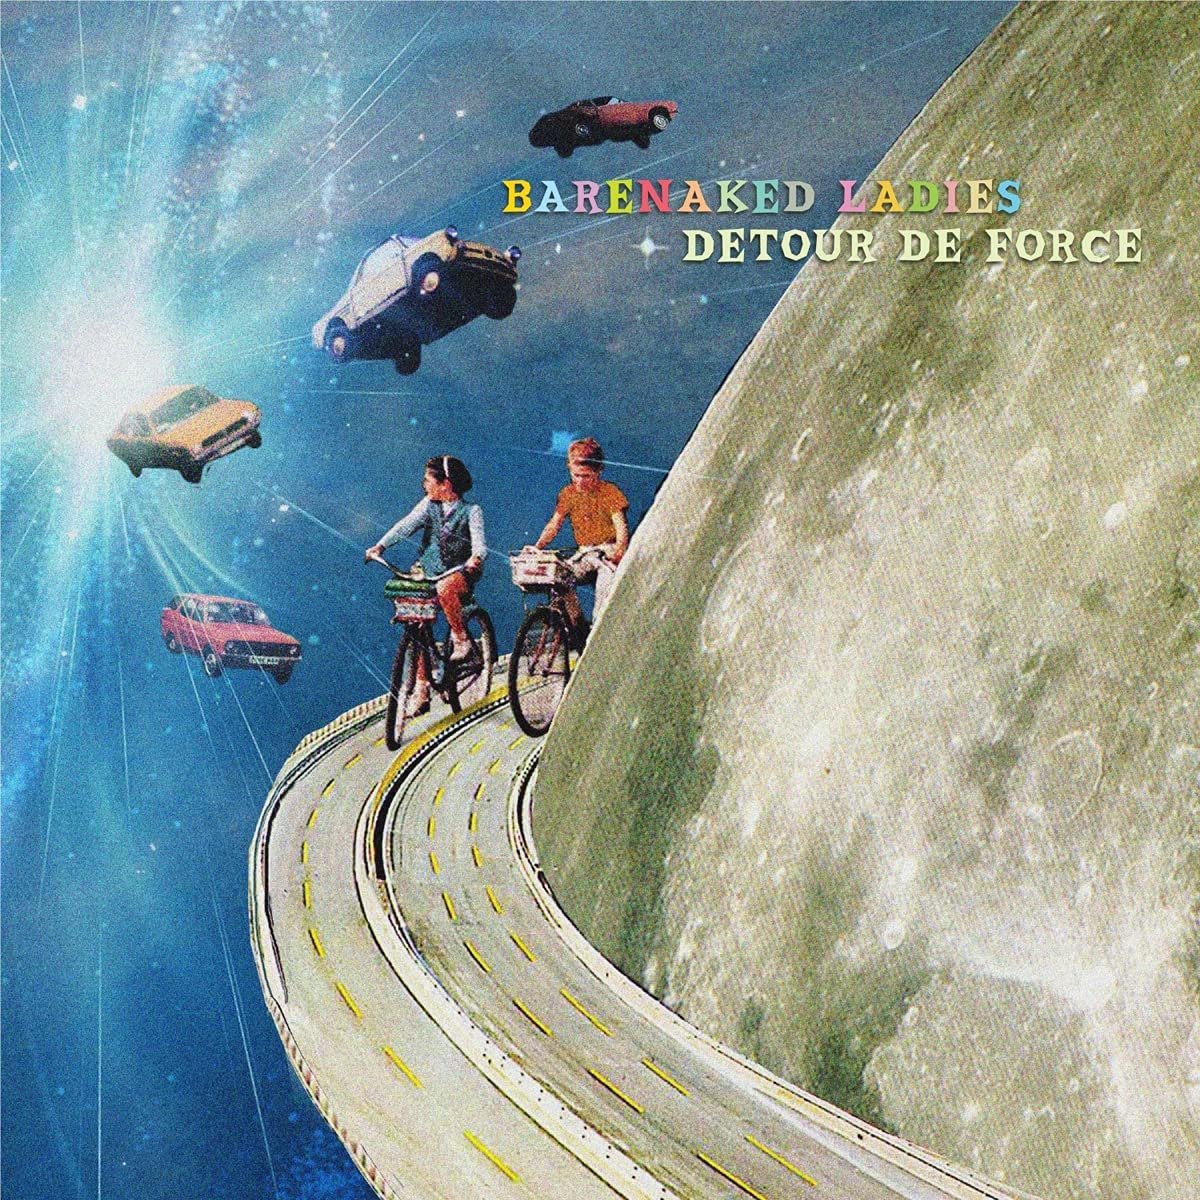 BARENAKED LADIES - DETOUR DE FORCE album artwork